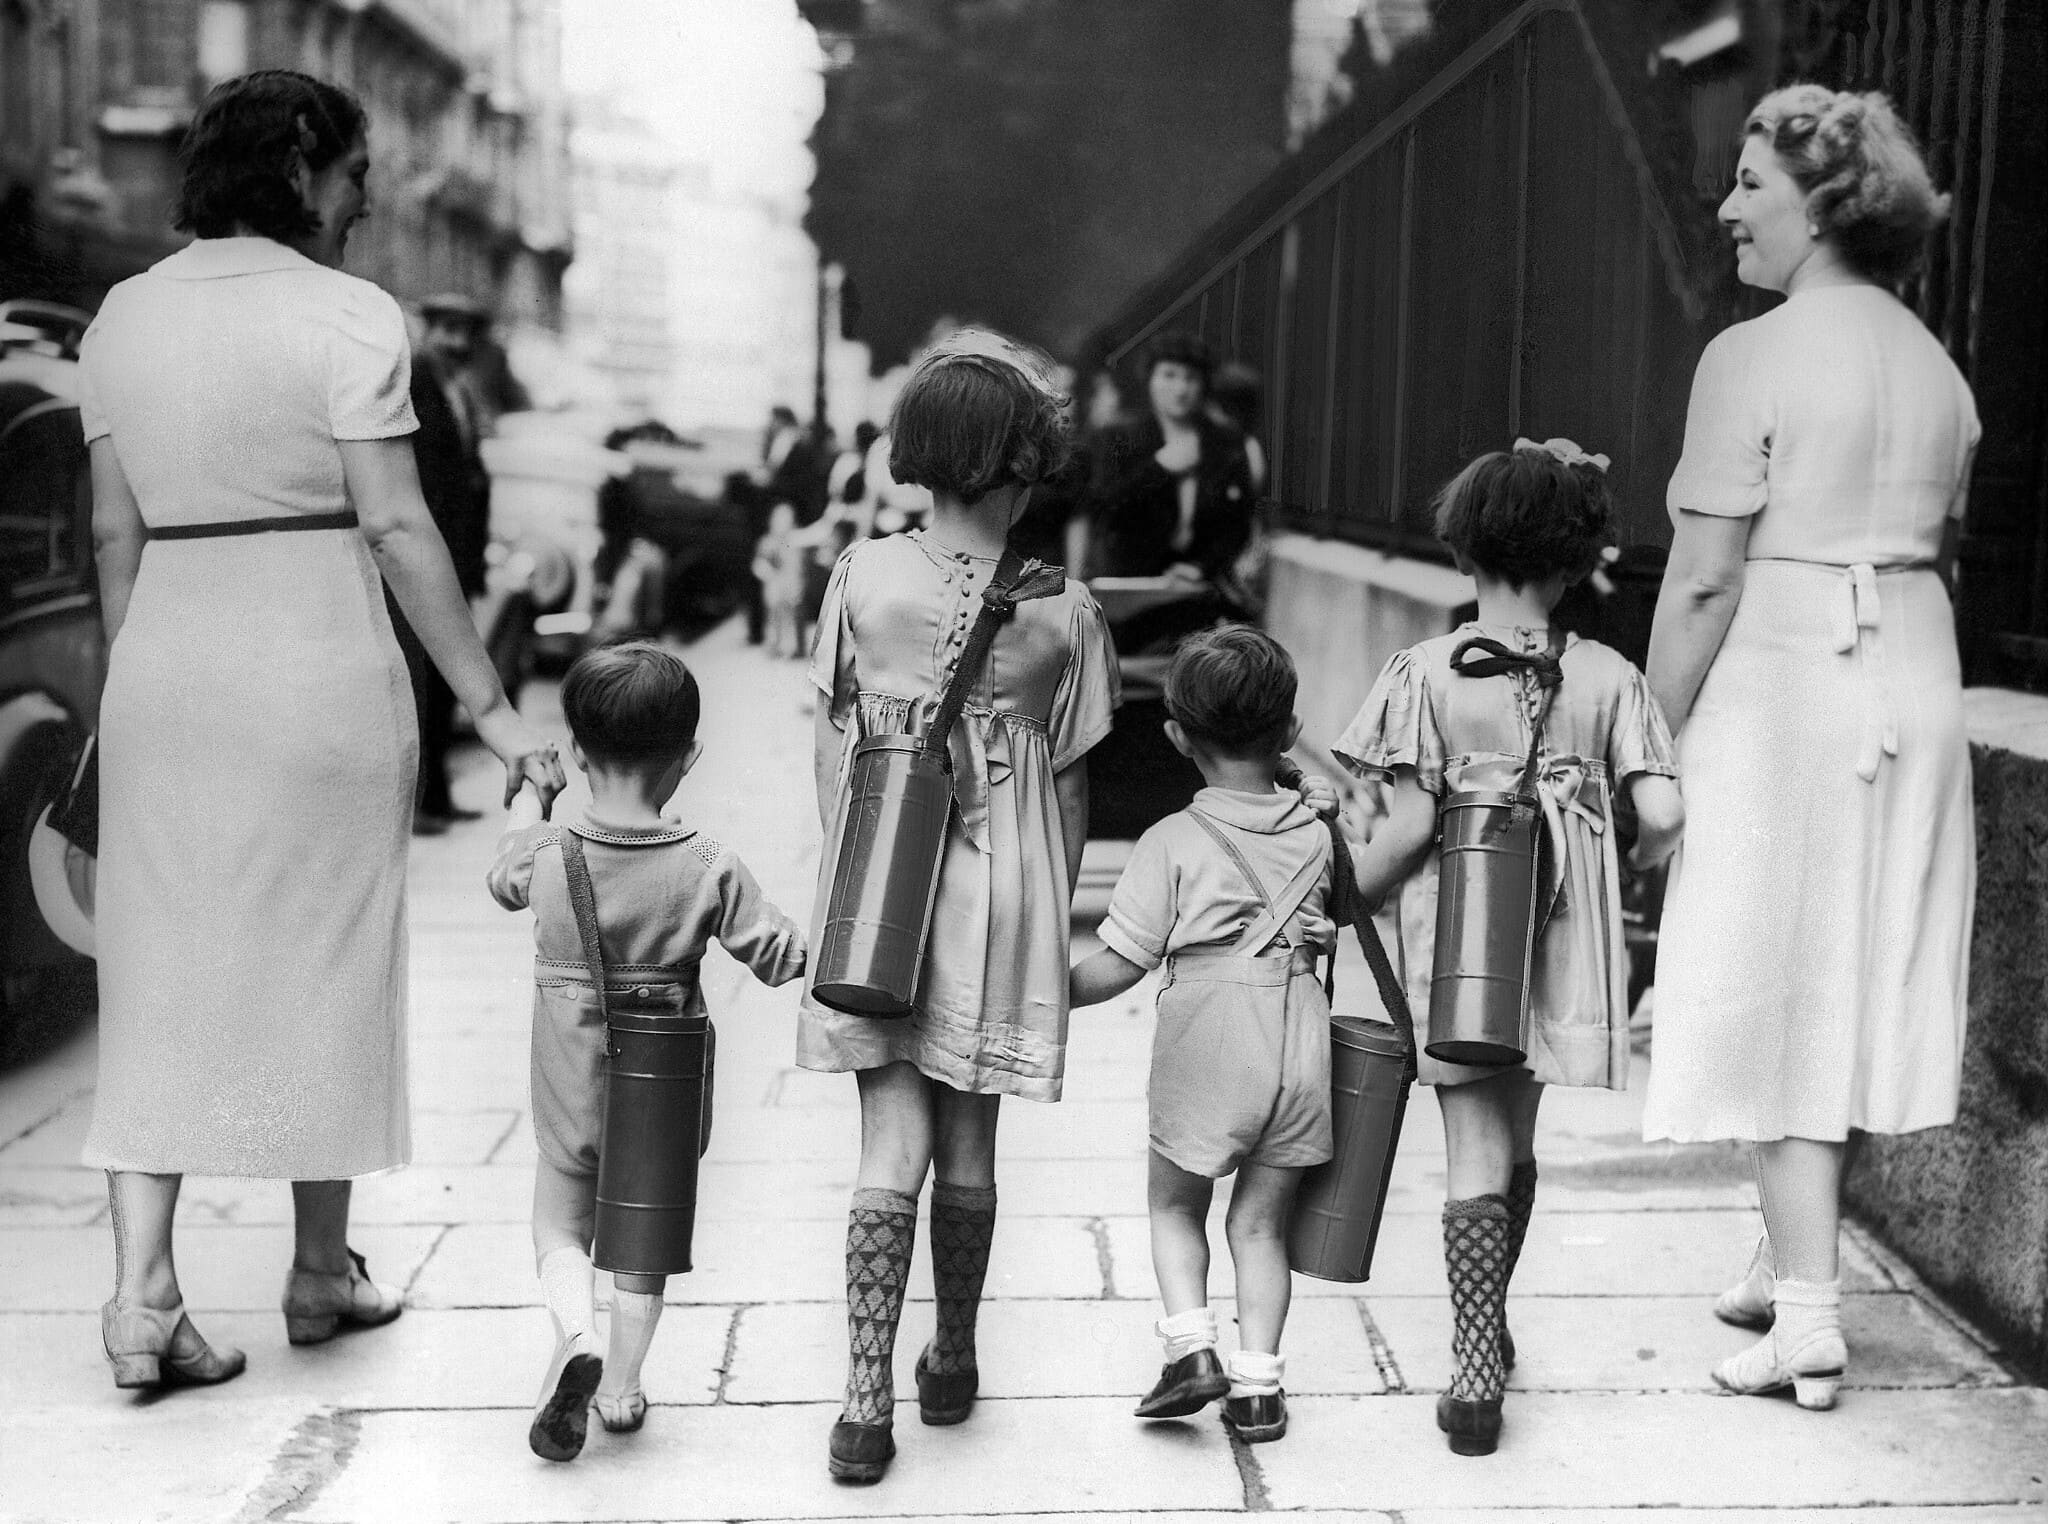 אילוסטרציה, אוגוסט 19391 בפאריז: אמהות וילדים מצוידים במסכות גד חדשות שקיבלו כדי להתגונן ממתקפה גרמנית (צילום: AP)